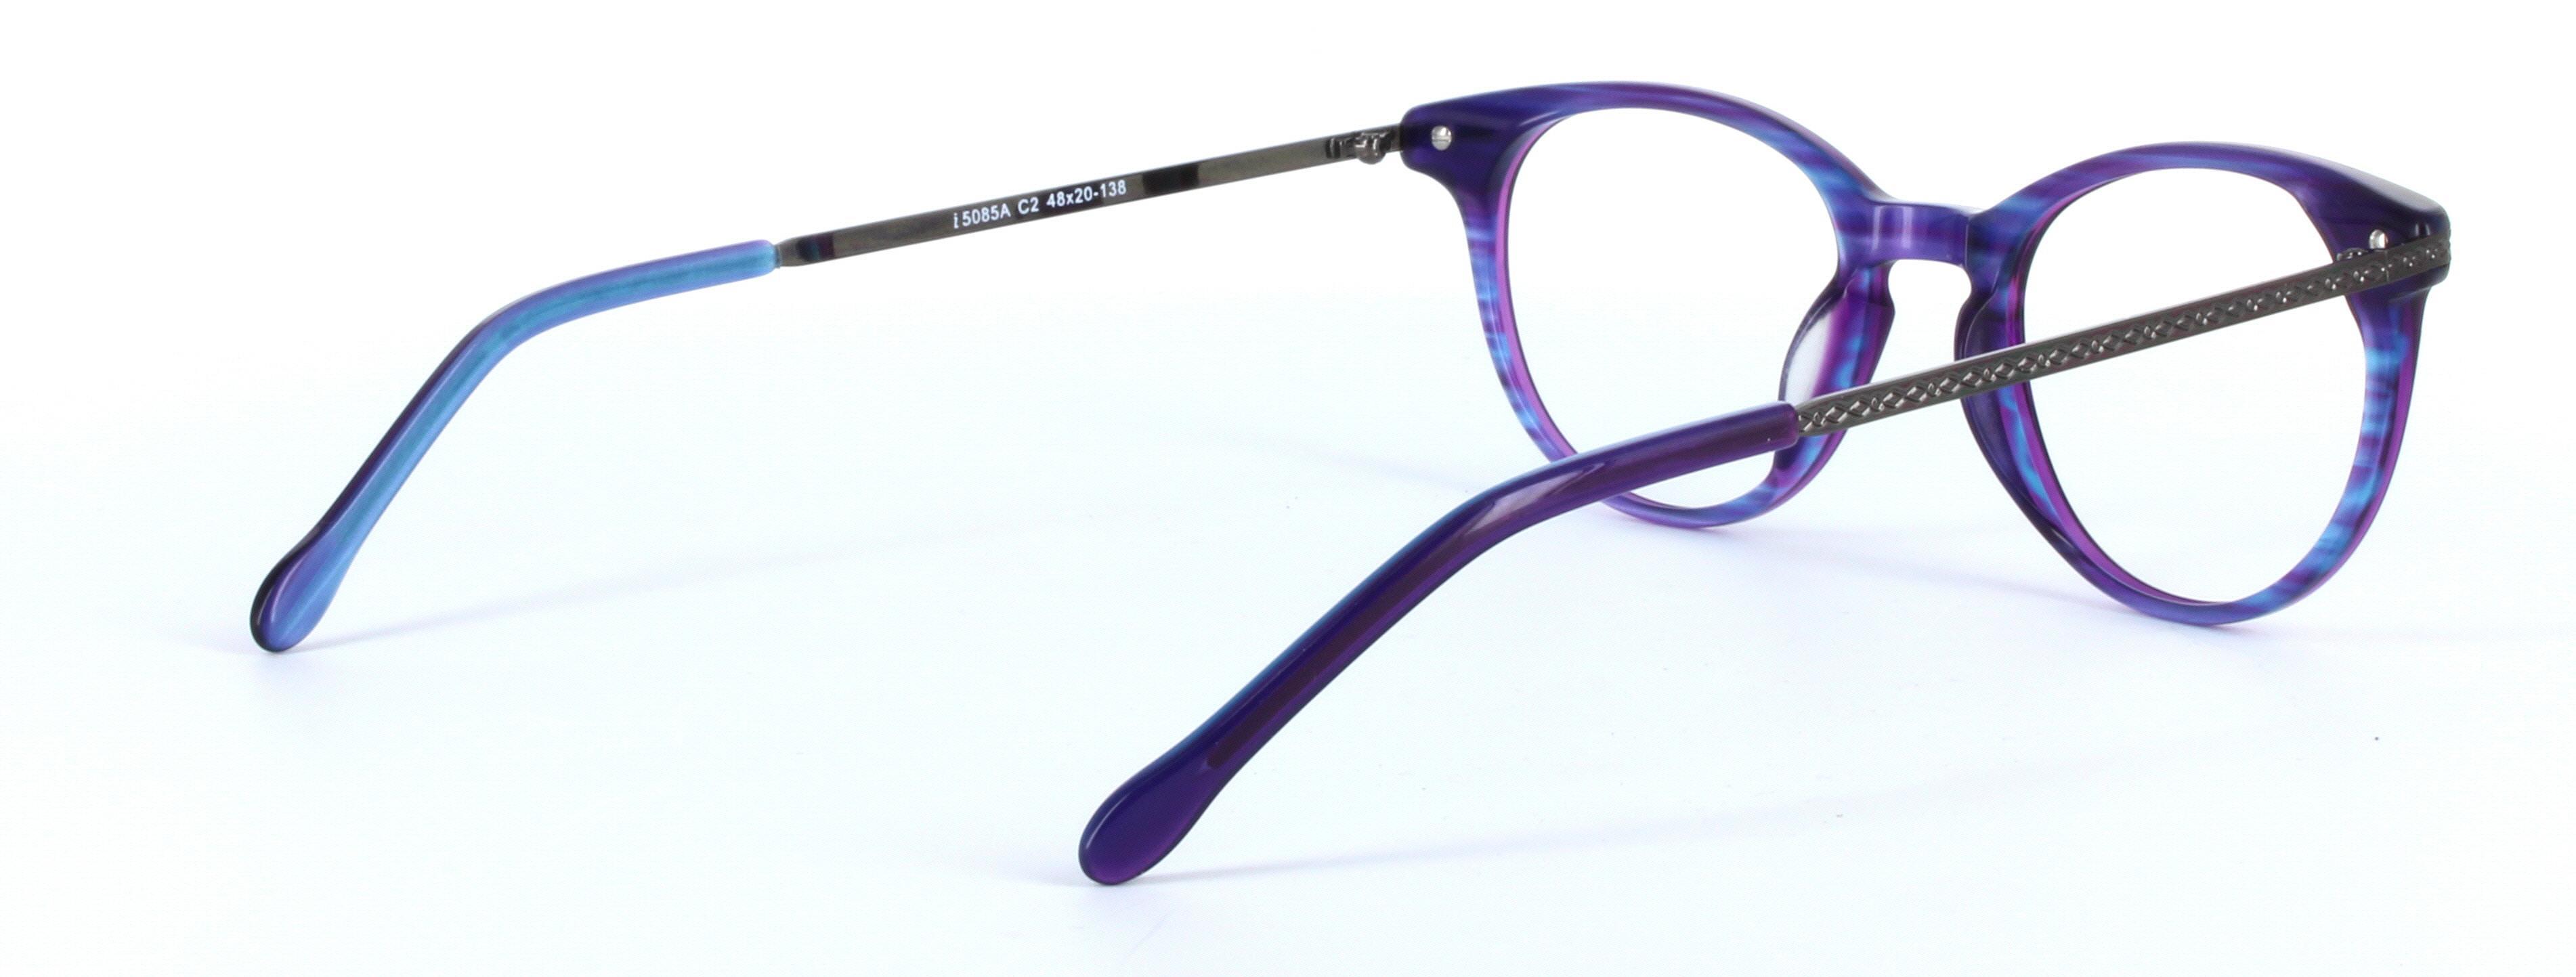 Amanda Purple Full Rim Round Acetate Glasses - Image View 5